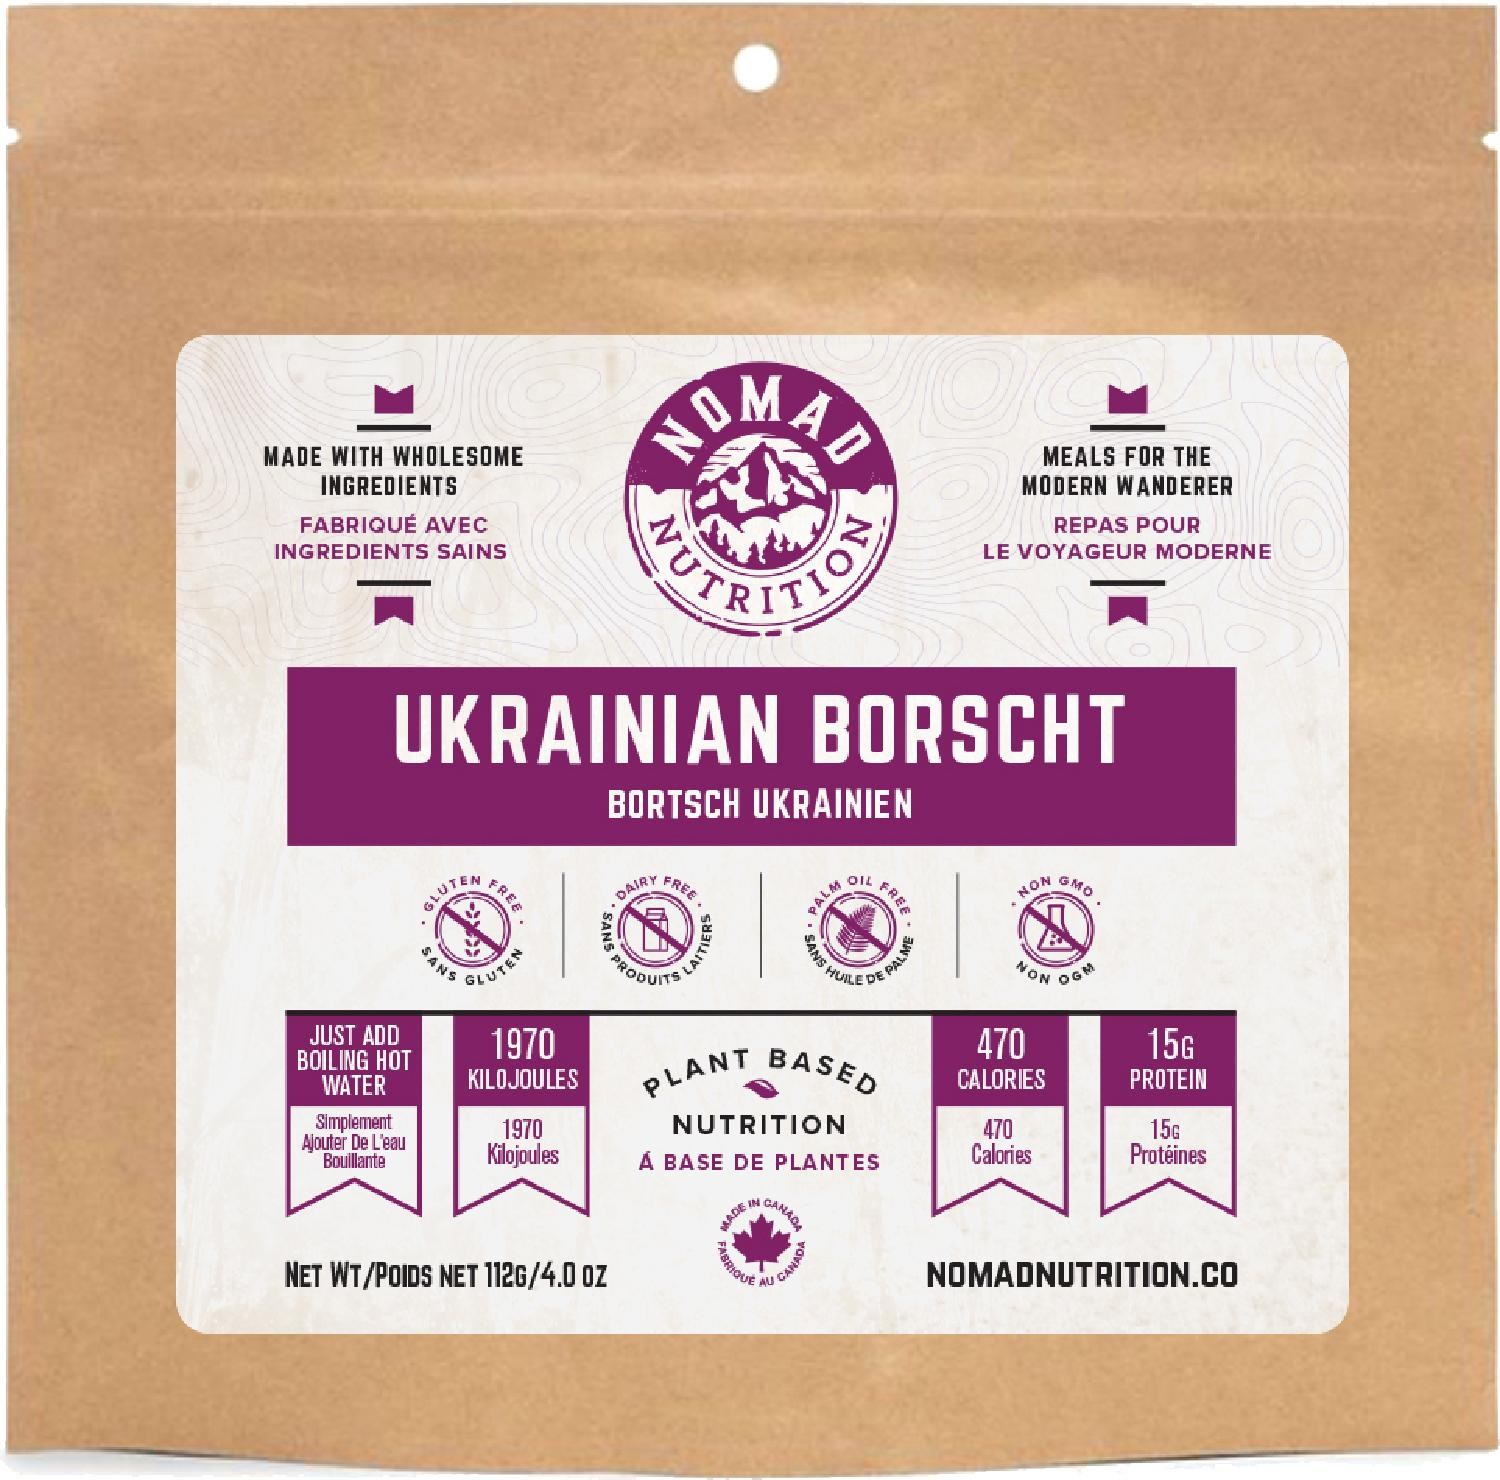 борщ со свежей капустой и мясом охлажденный деликатеска 250г Украинский борщ – 1 порция Nomad Nutrition